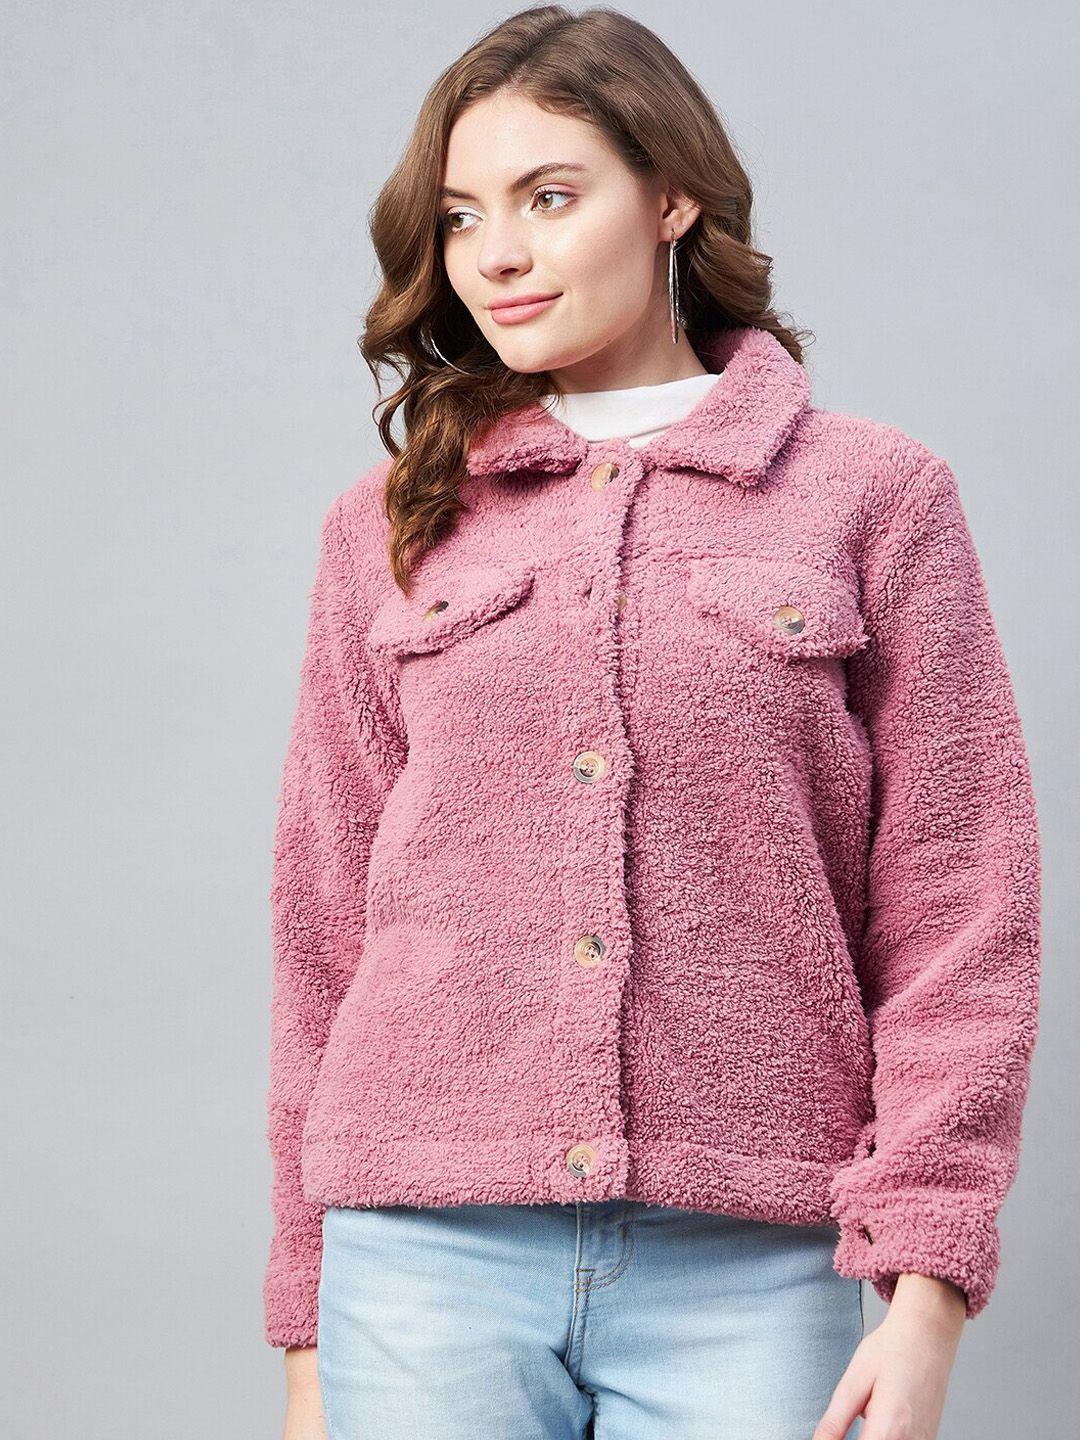 stylestone women pink fleece lightweight outdoor tailored jacket